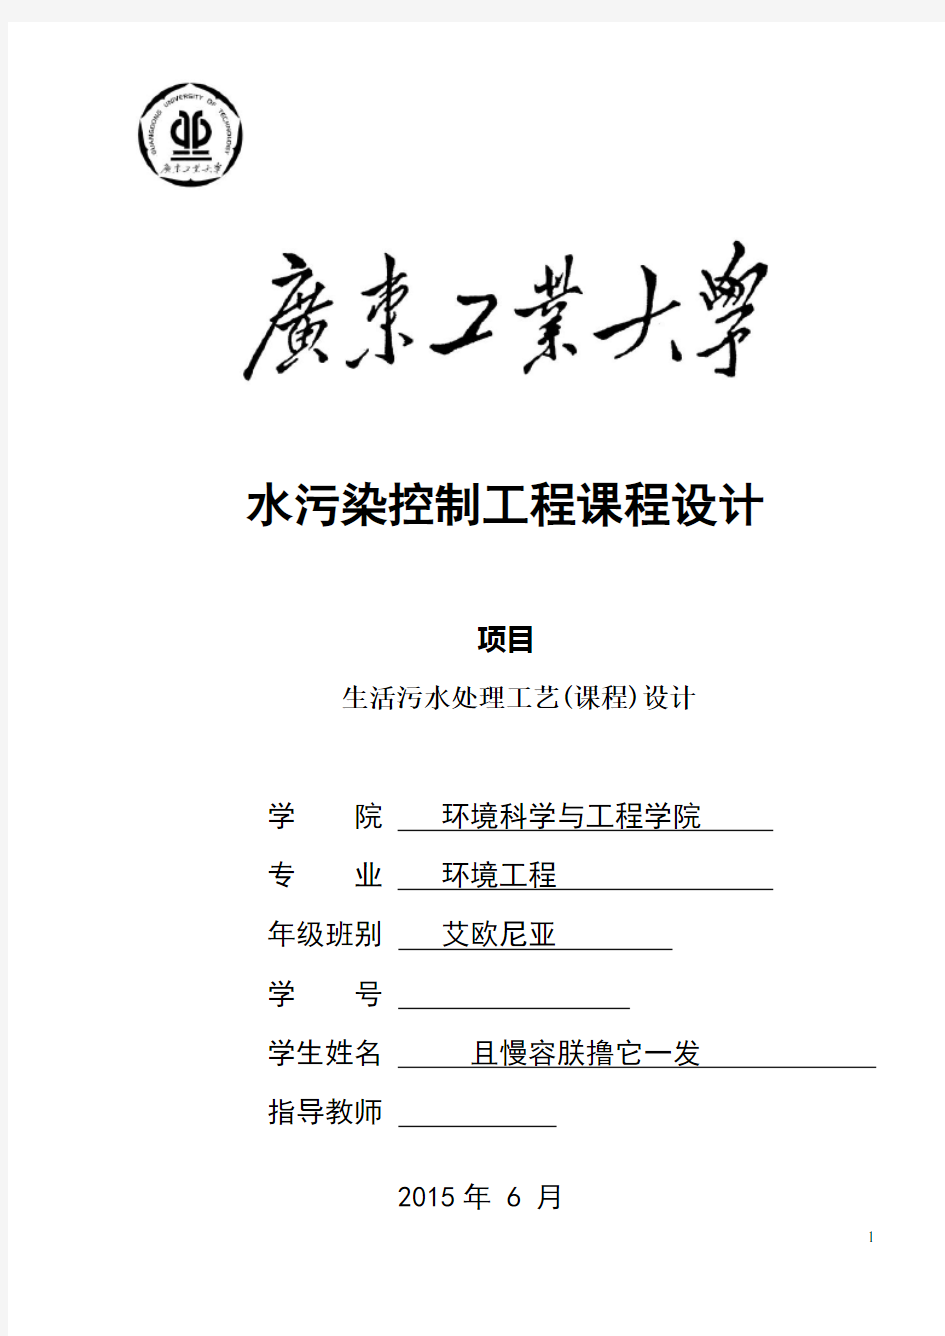 广东工业大学环境工程水污染课程设计(仅供参考)